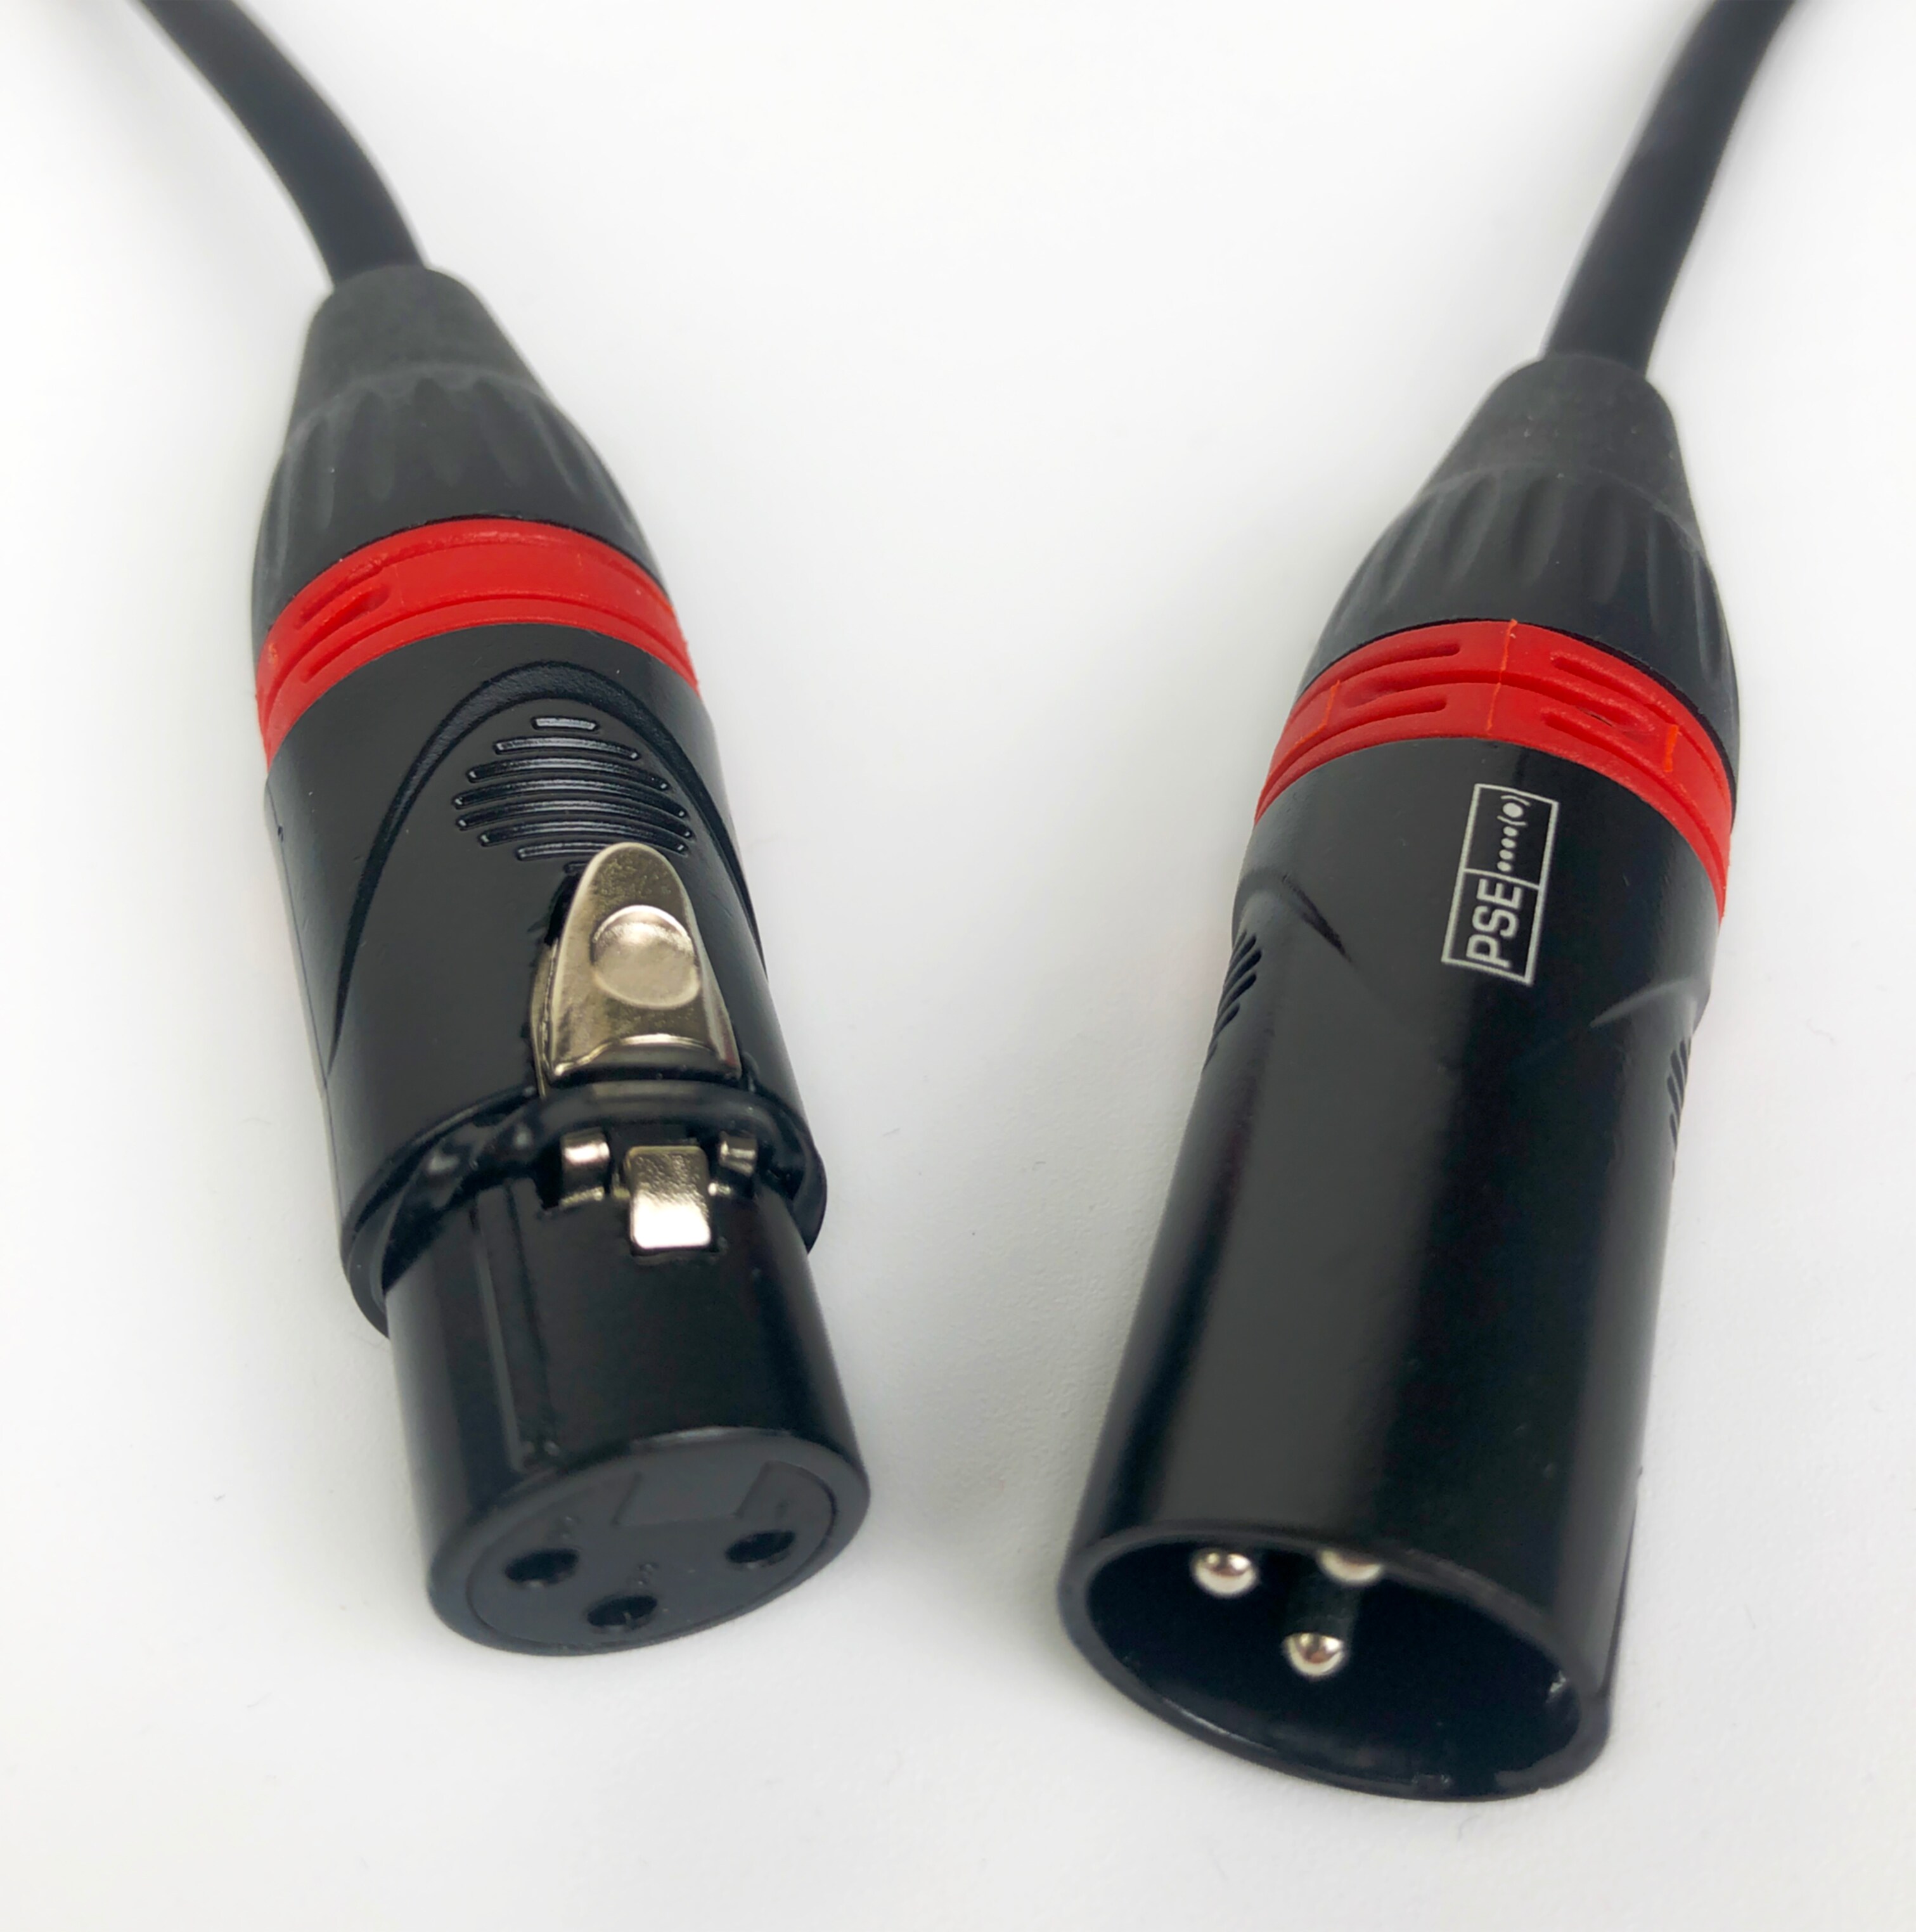 Röde Mikrofonkabel 10m XLR/XLR